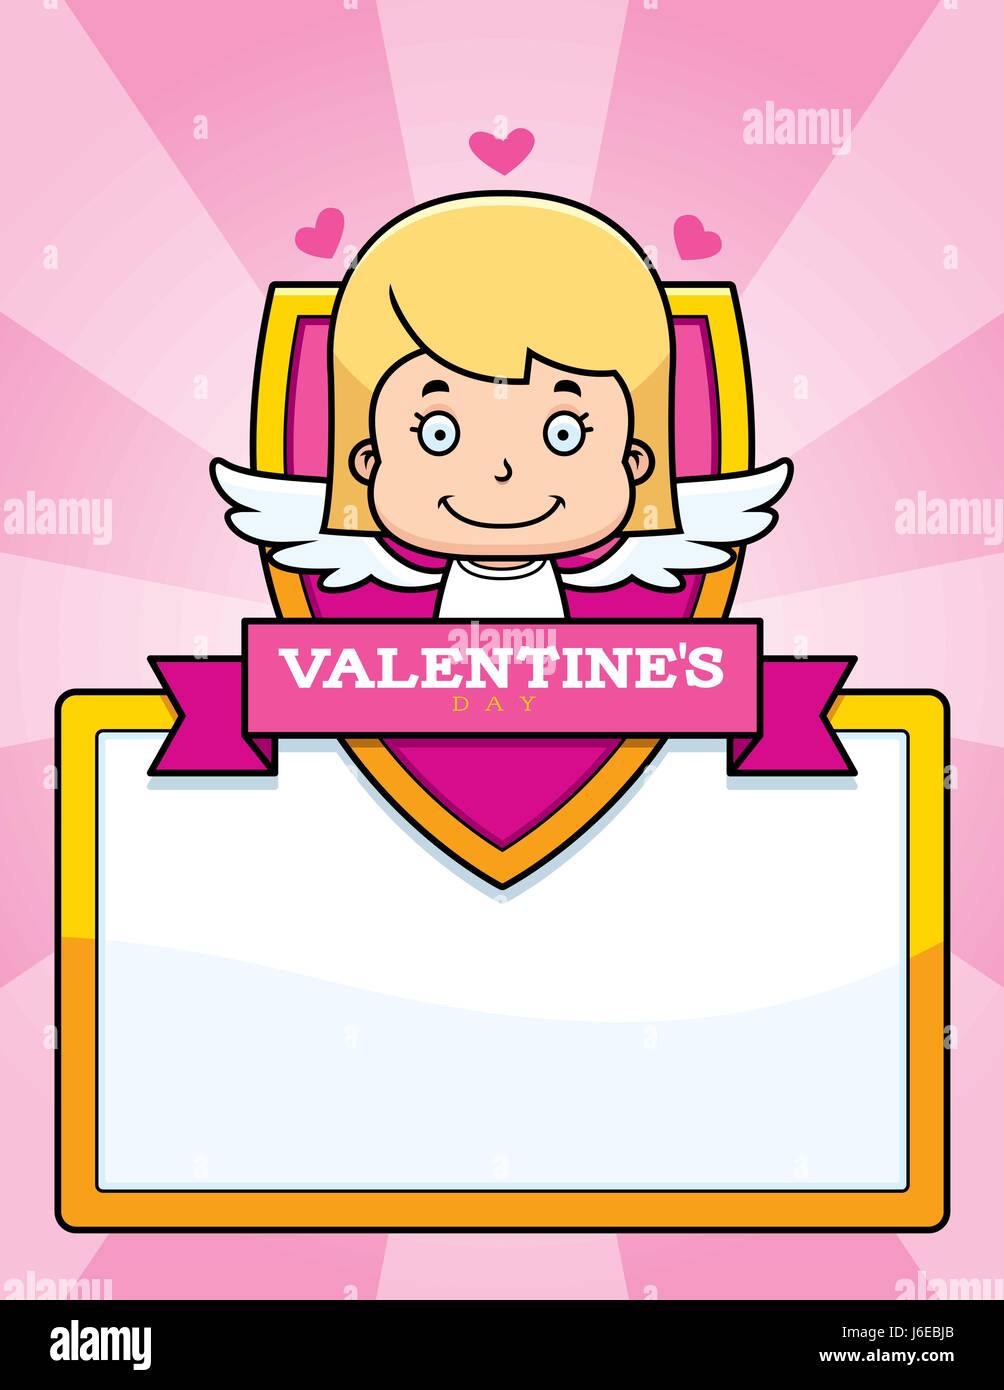 Un cartoon illustrazione di una piccola ragazza cupido in un giorno di San Valentino grafica a tema. Illustrazione Vettoriale